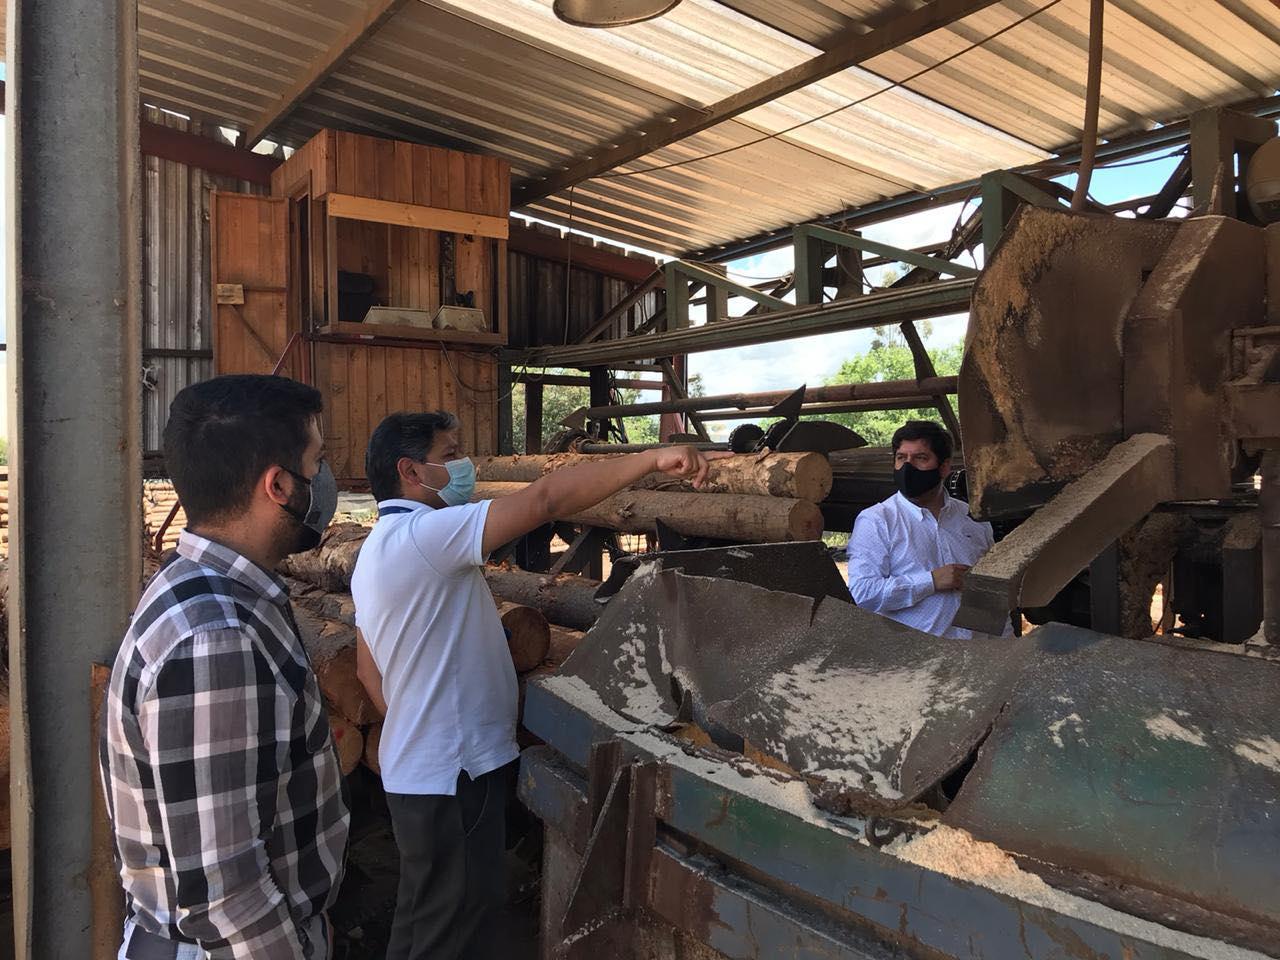 Vicsa Industrial y su proyecto "Unoporcuatro" derriban los mitos sobre la madera de rechazo y fabricación de productos con materiales reciclados